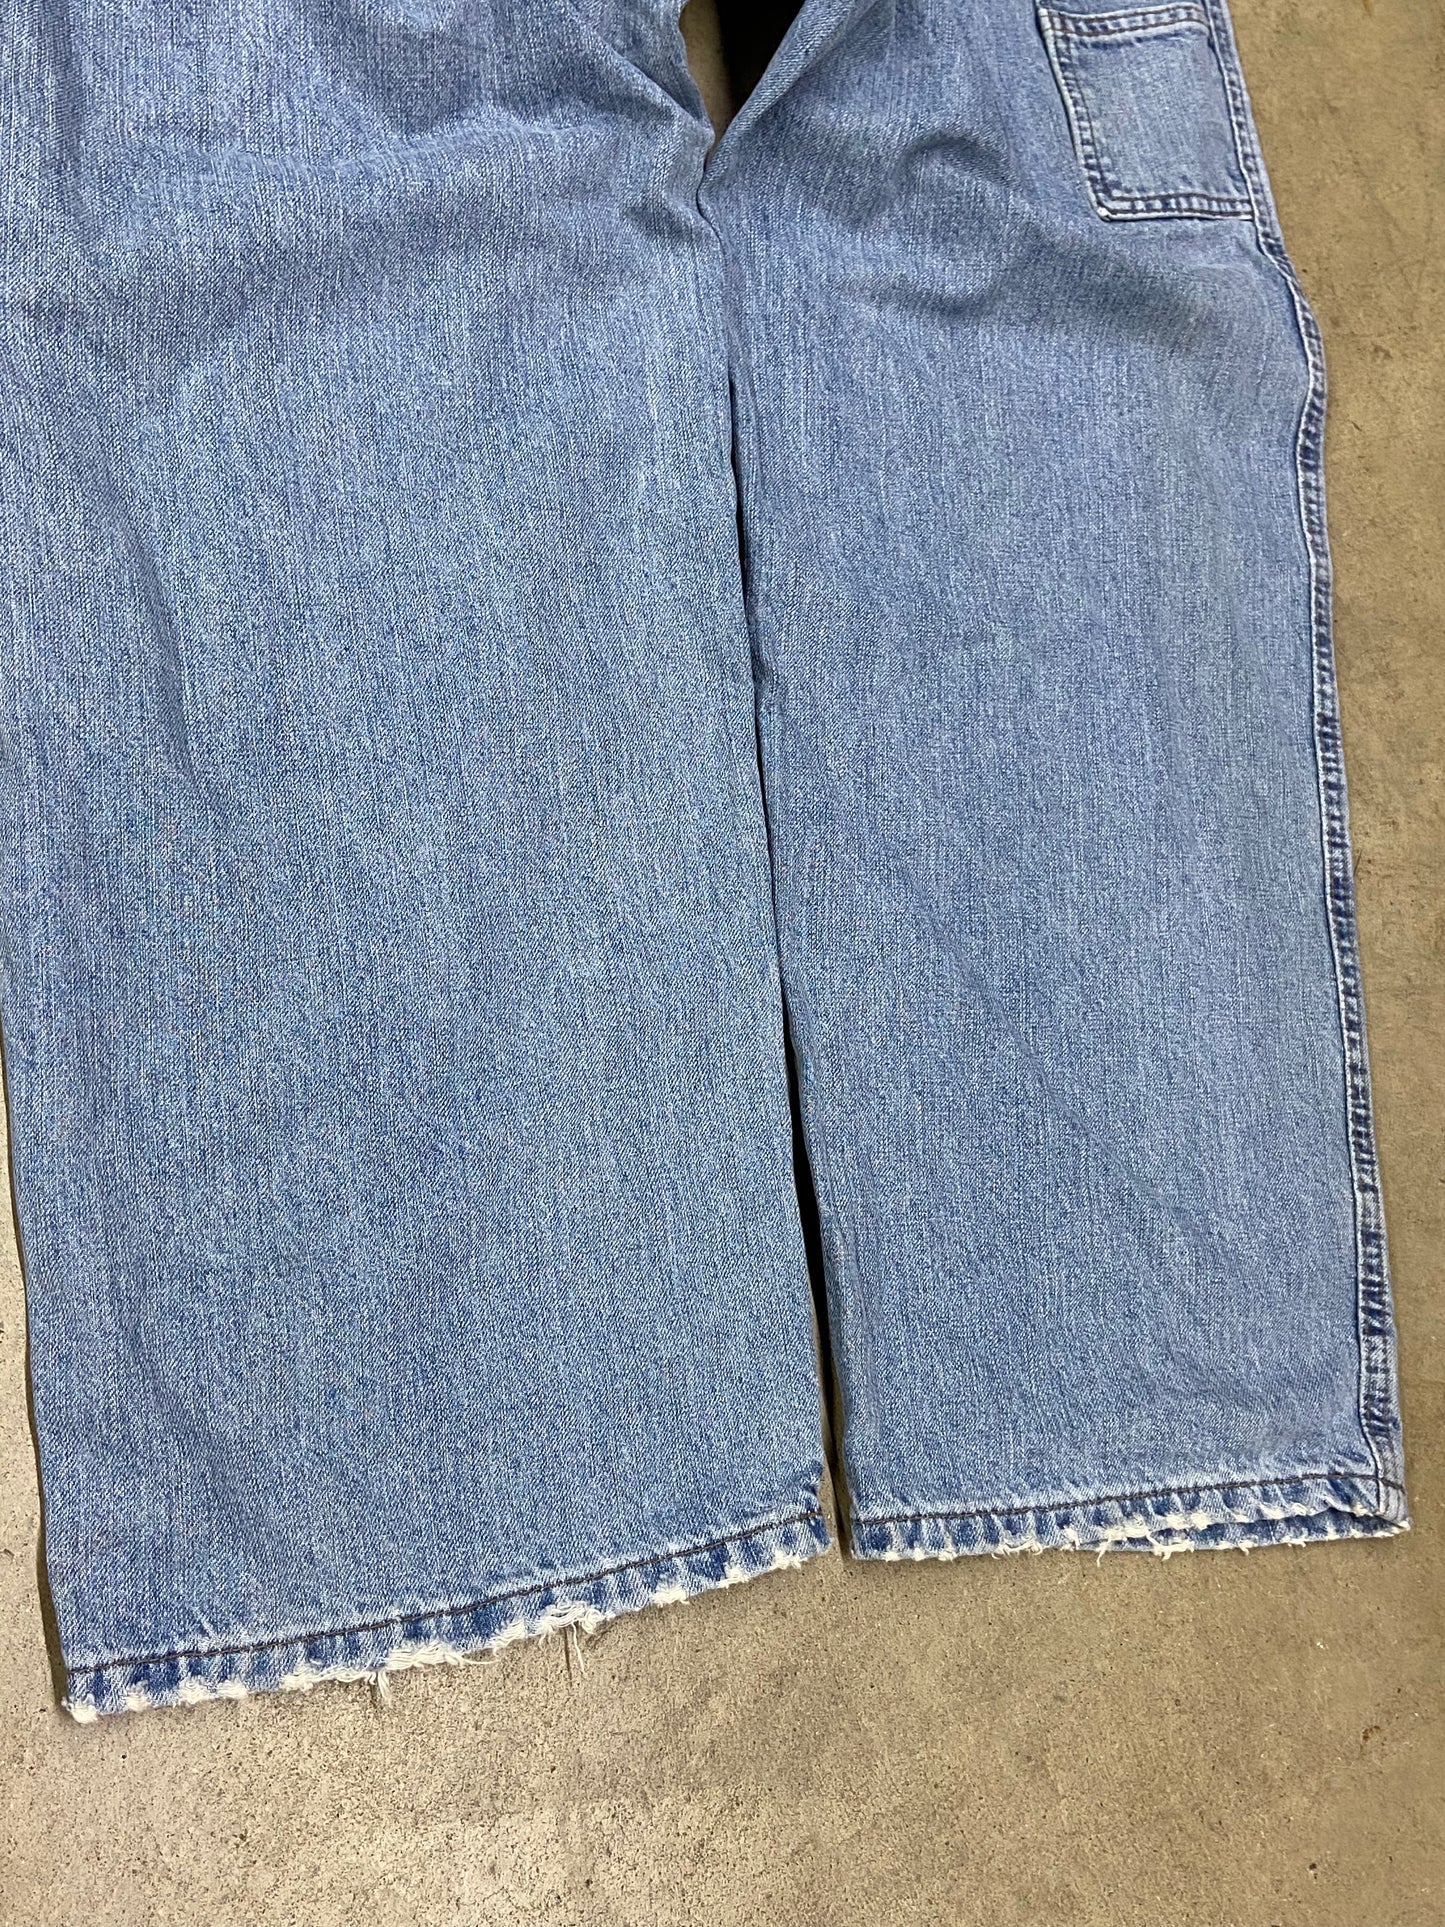 VTG Tommy Hilfiger Loose Fit Blue Denim Jeans Sz 32x30